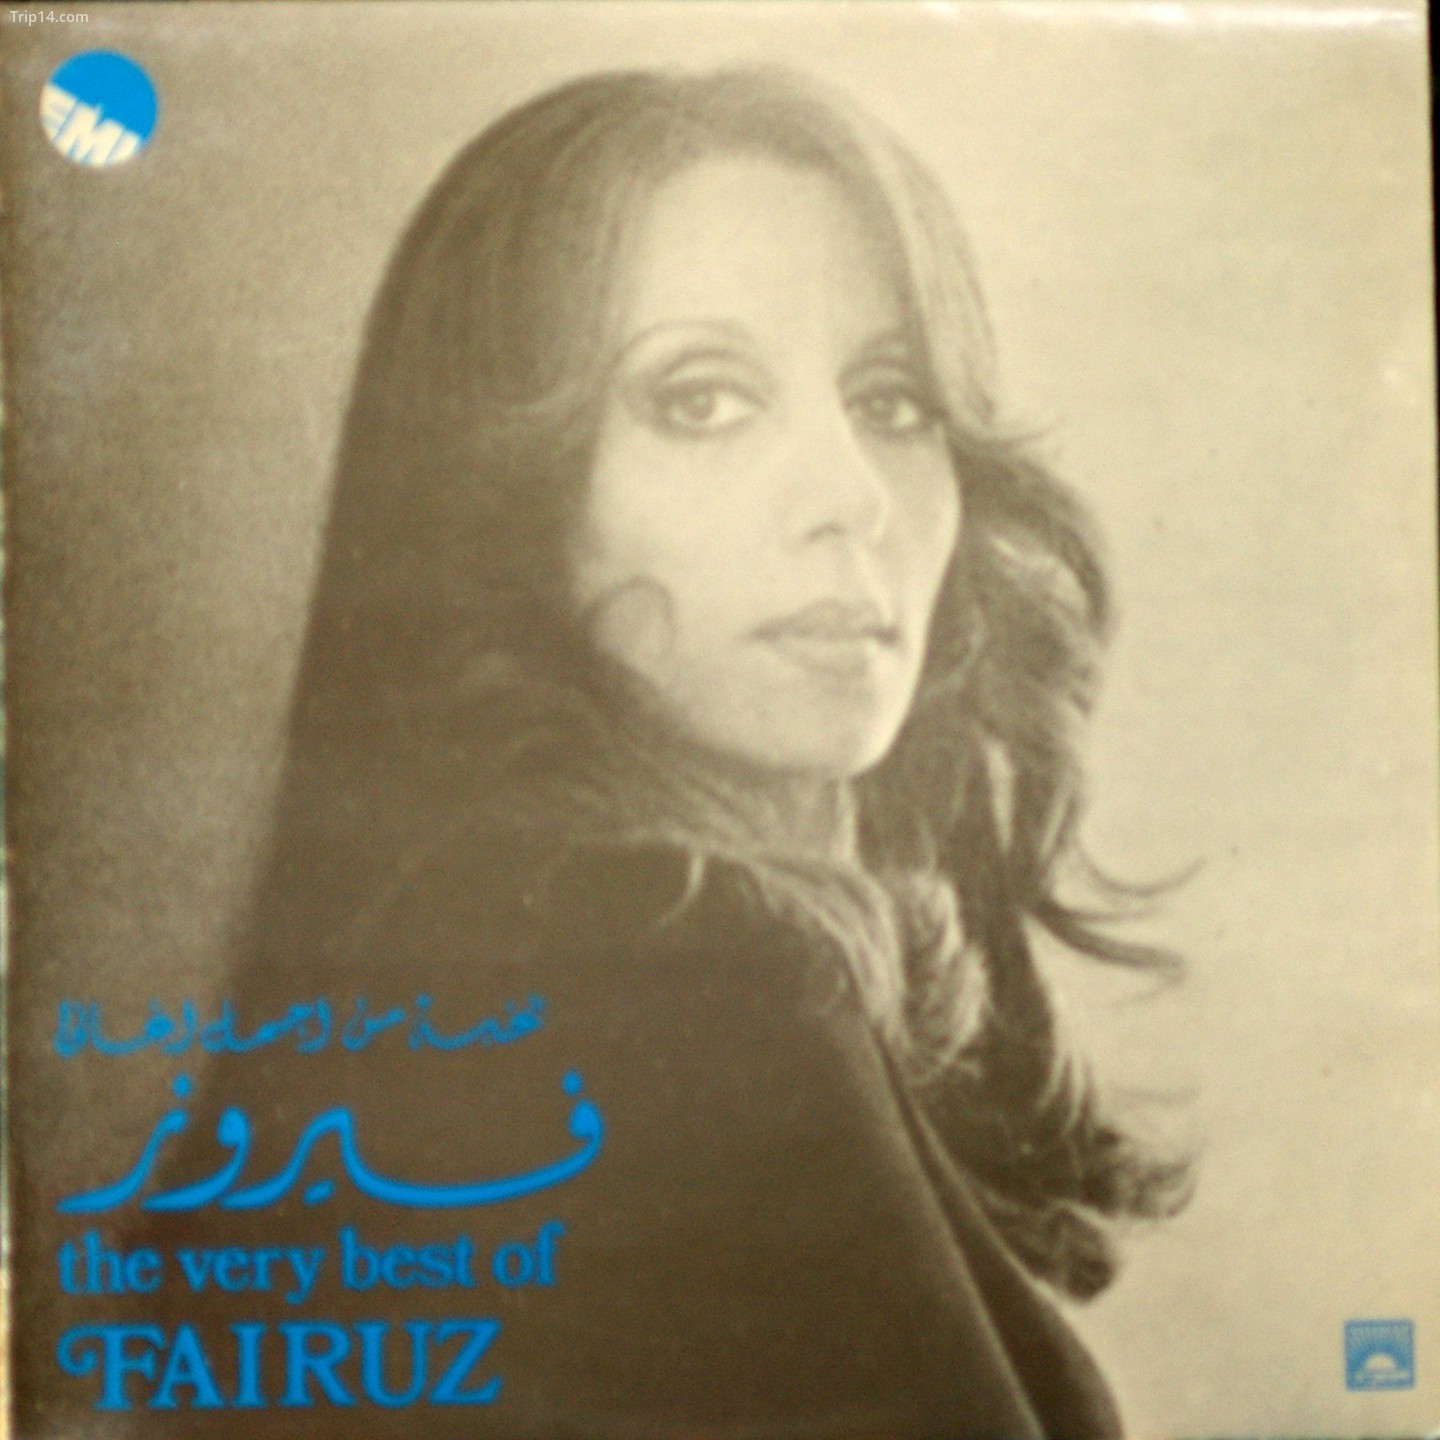 Nghe Fairuz